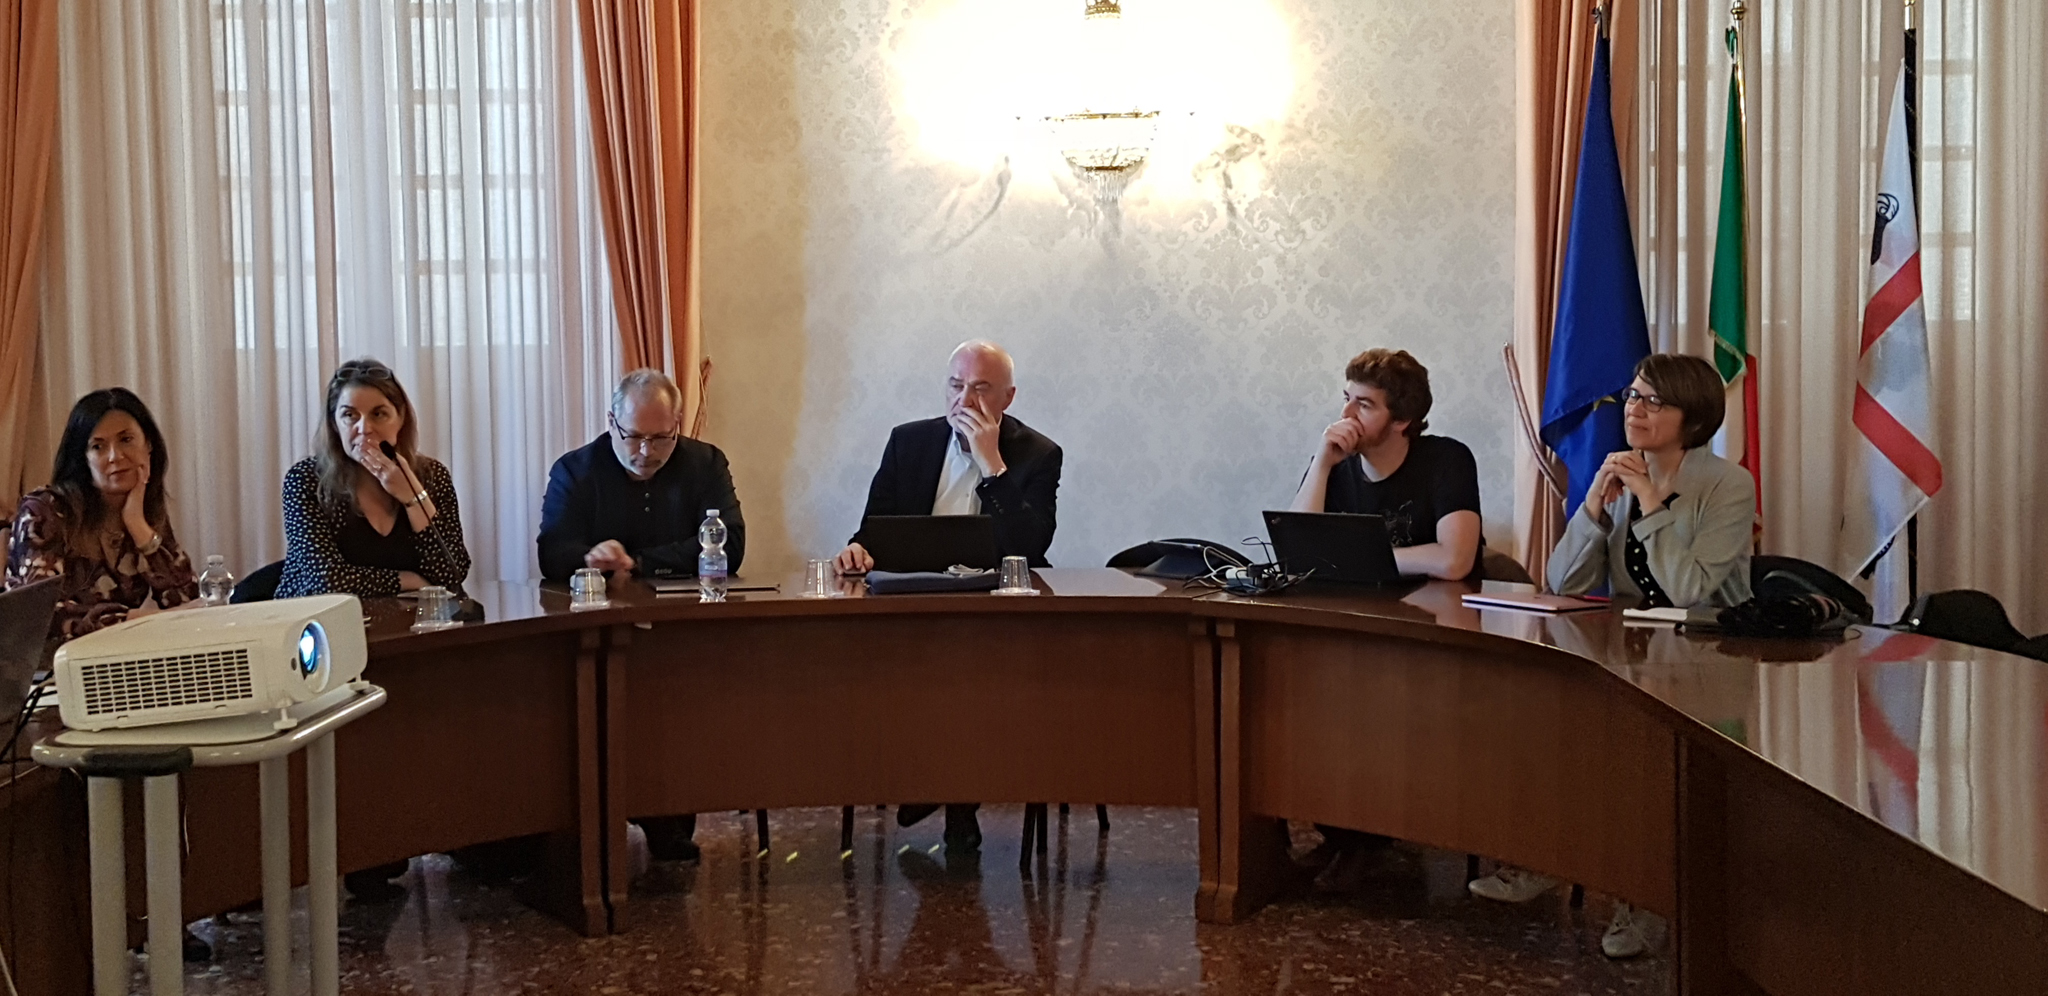 17 maggio 2019 - Riunione nella Sala Consiglio dell'Università di Cagliari